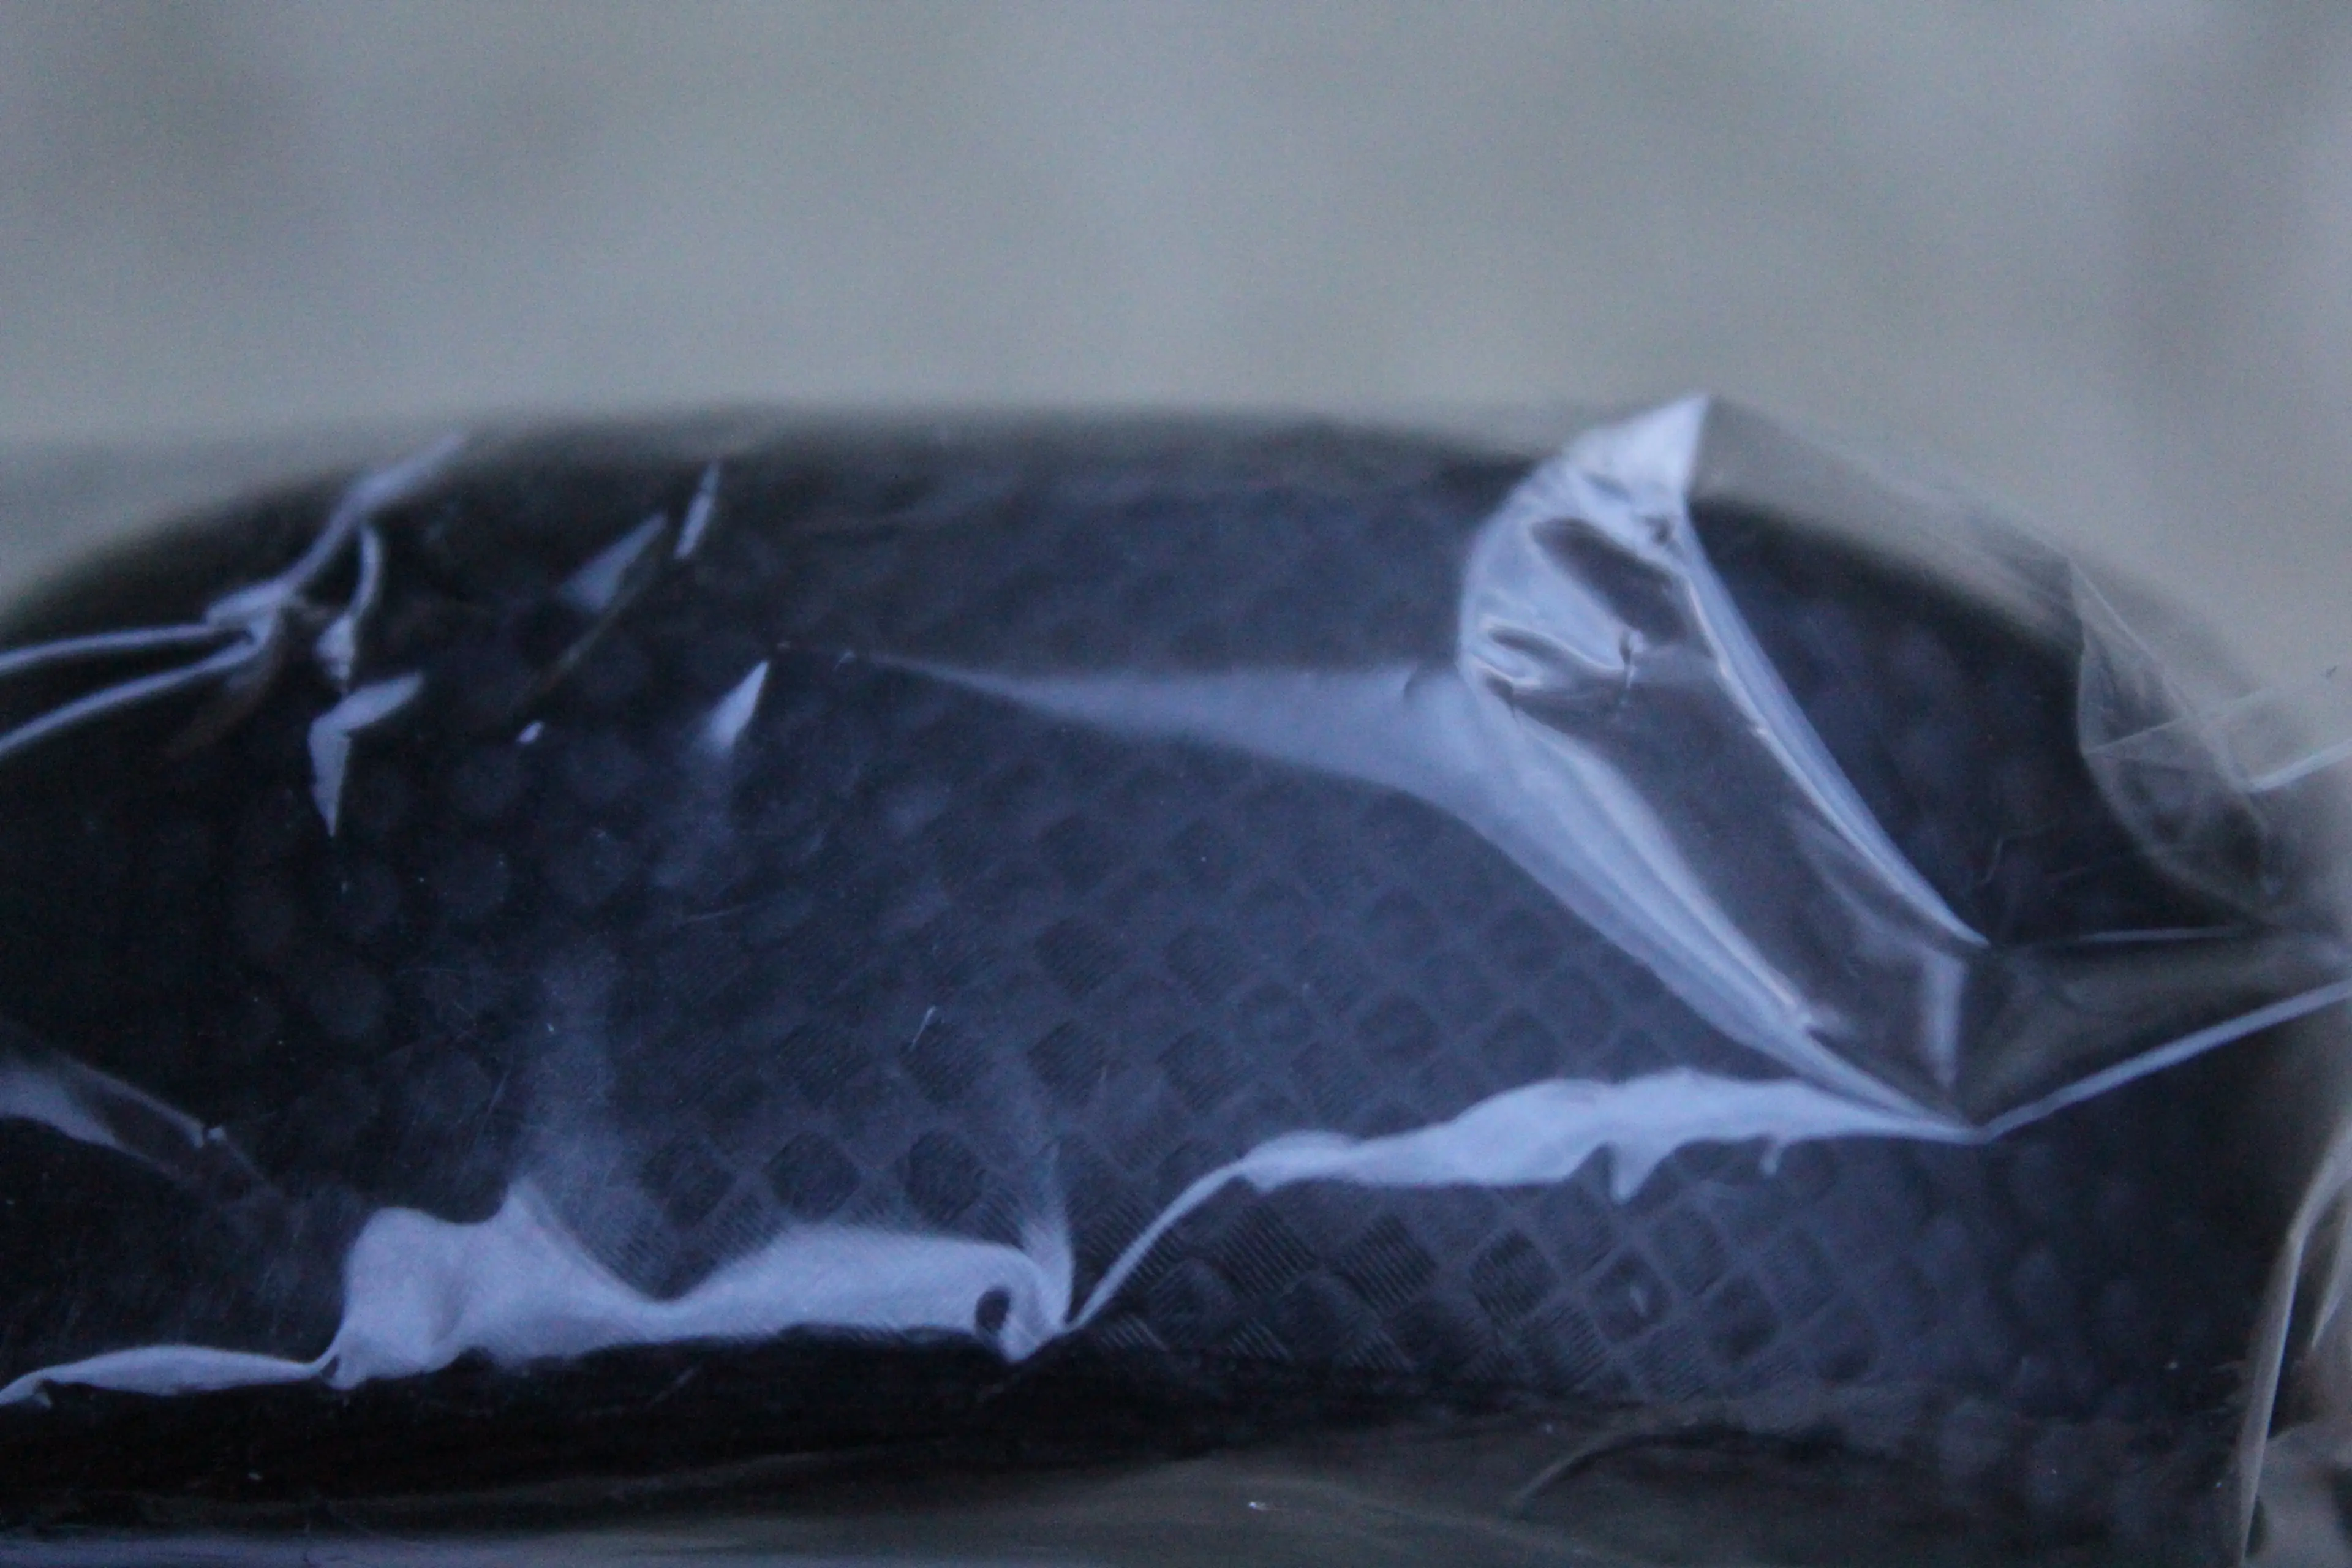 Image Kiwi Soft Grip ghidolina - Negru Carbon